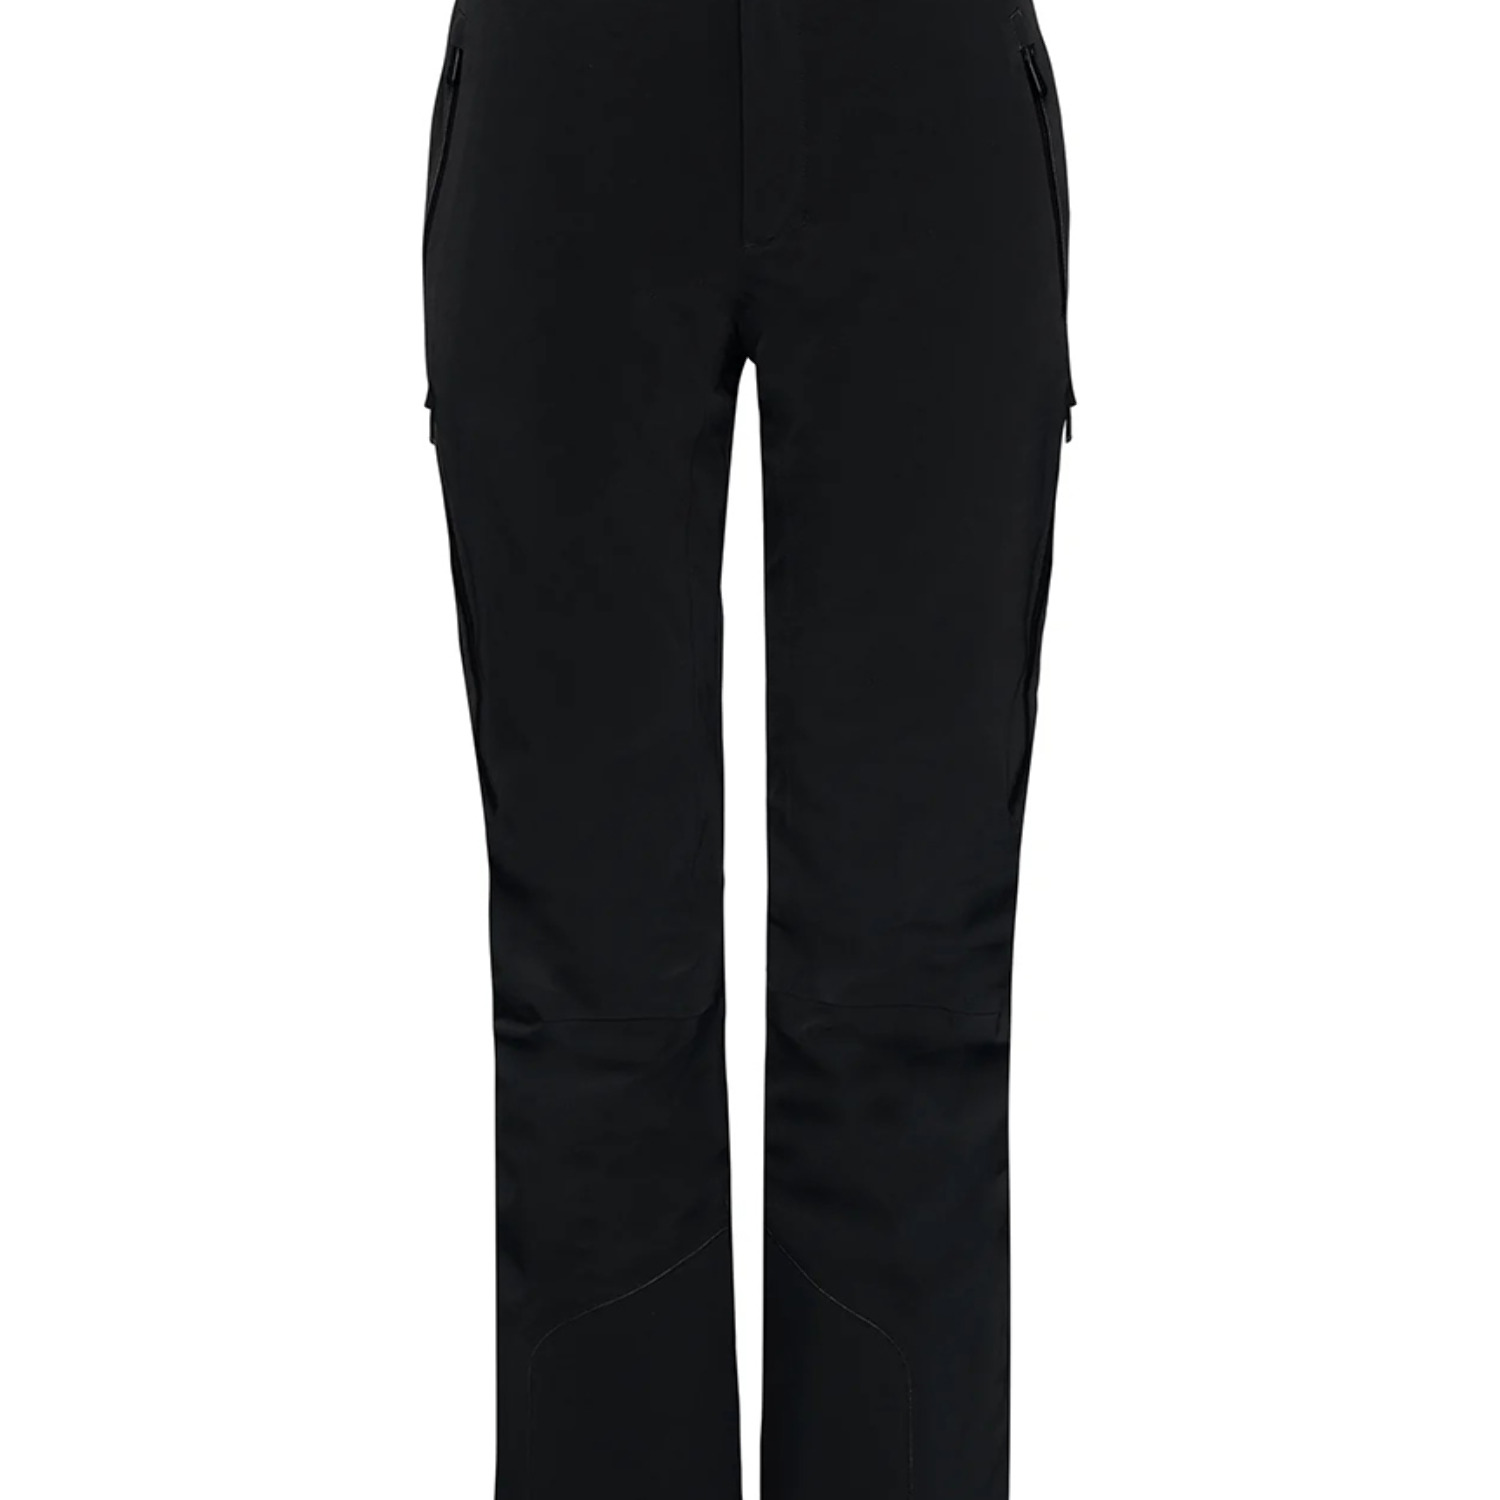 Спортивные брюки Toni Sailer Nicky Short Length 22/23 black/black 54 EU